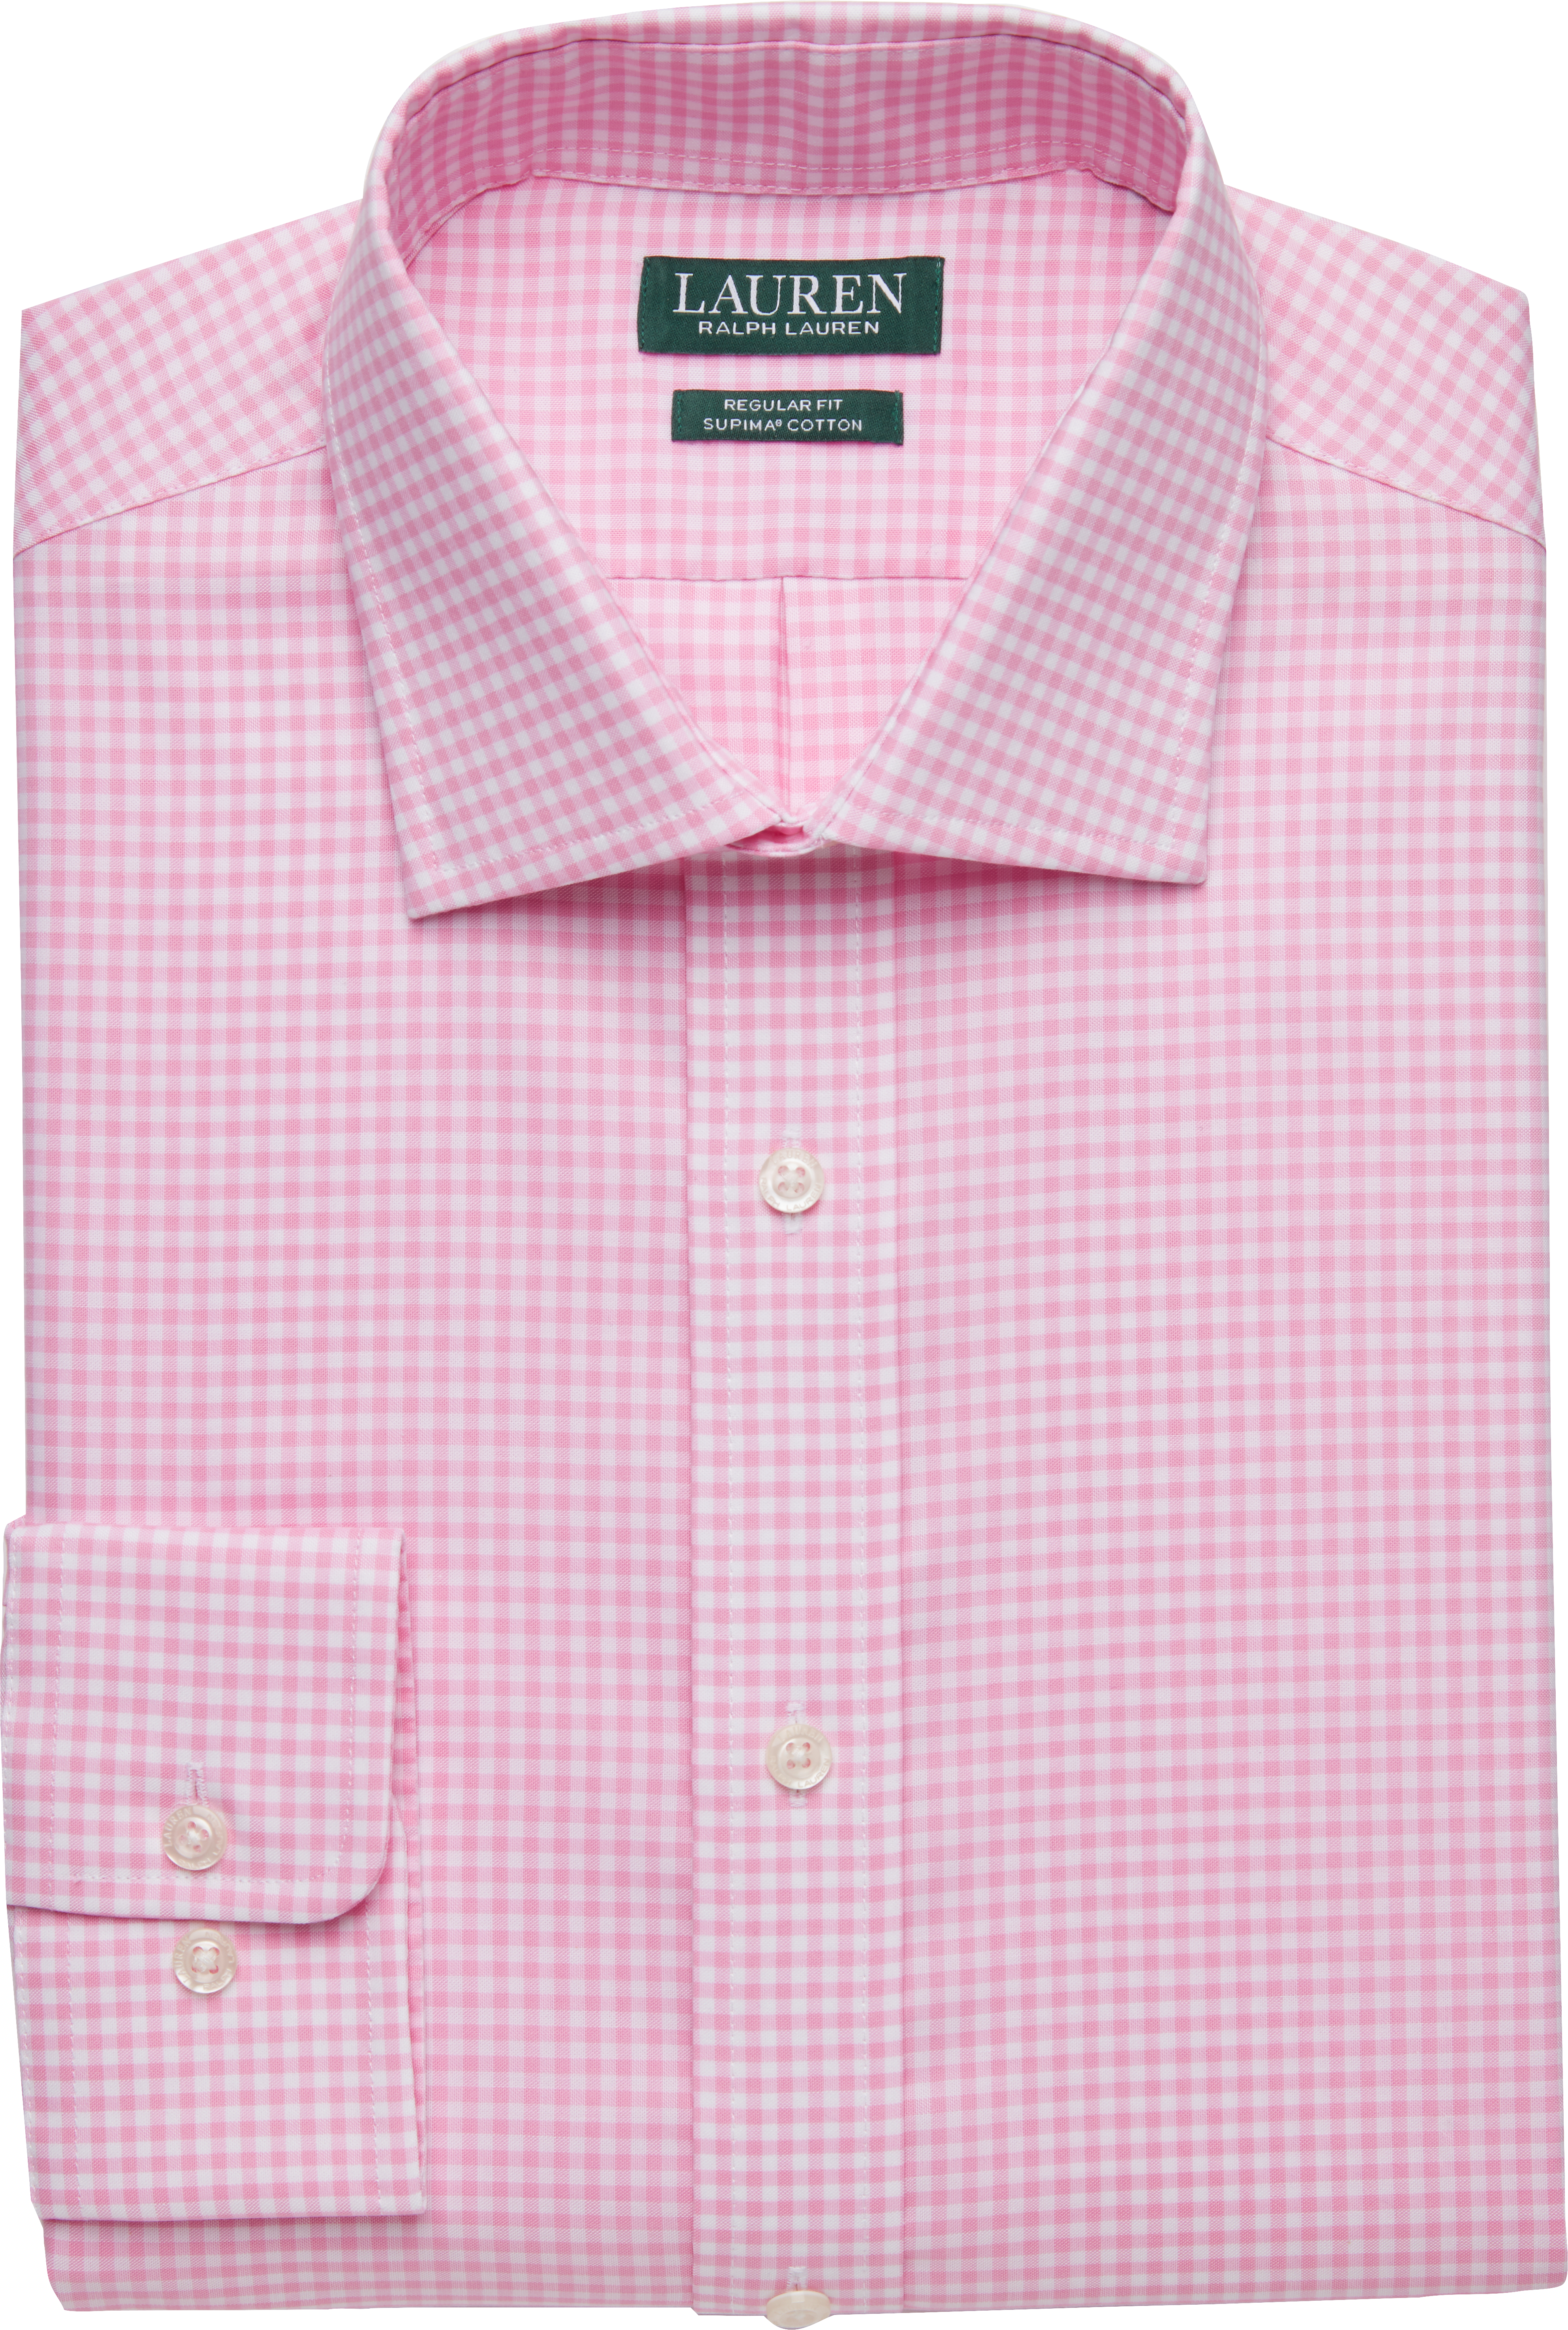 Buiten adem Terugbetaling Gebeurt Lauren by Ralph Lauren Pink Gingham Regular Fit Dress Shirt - Men's Sale |  Men's Wearhouse